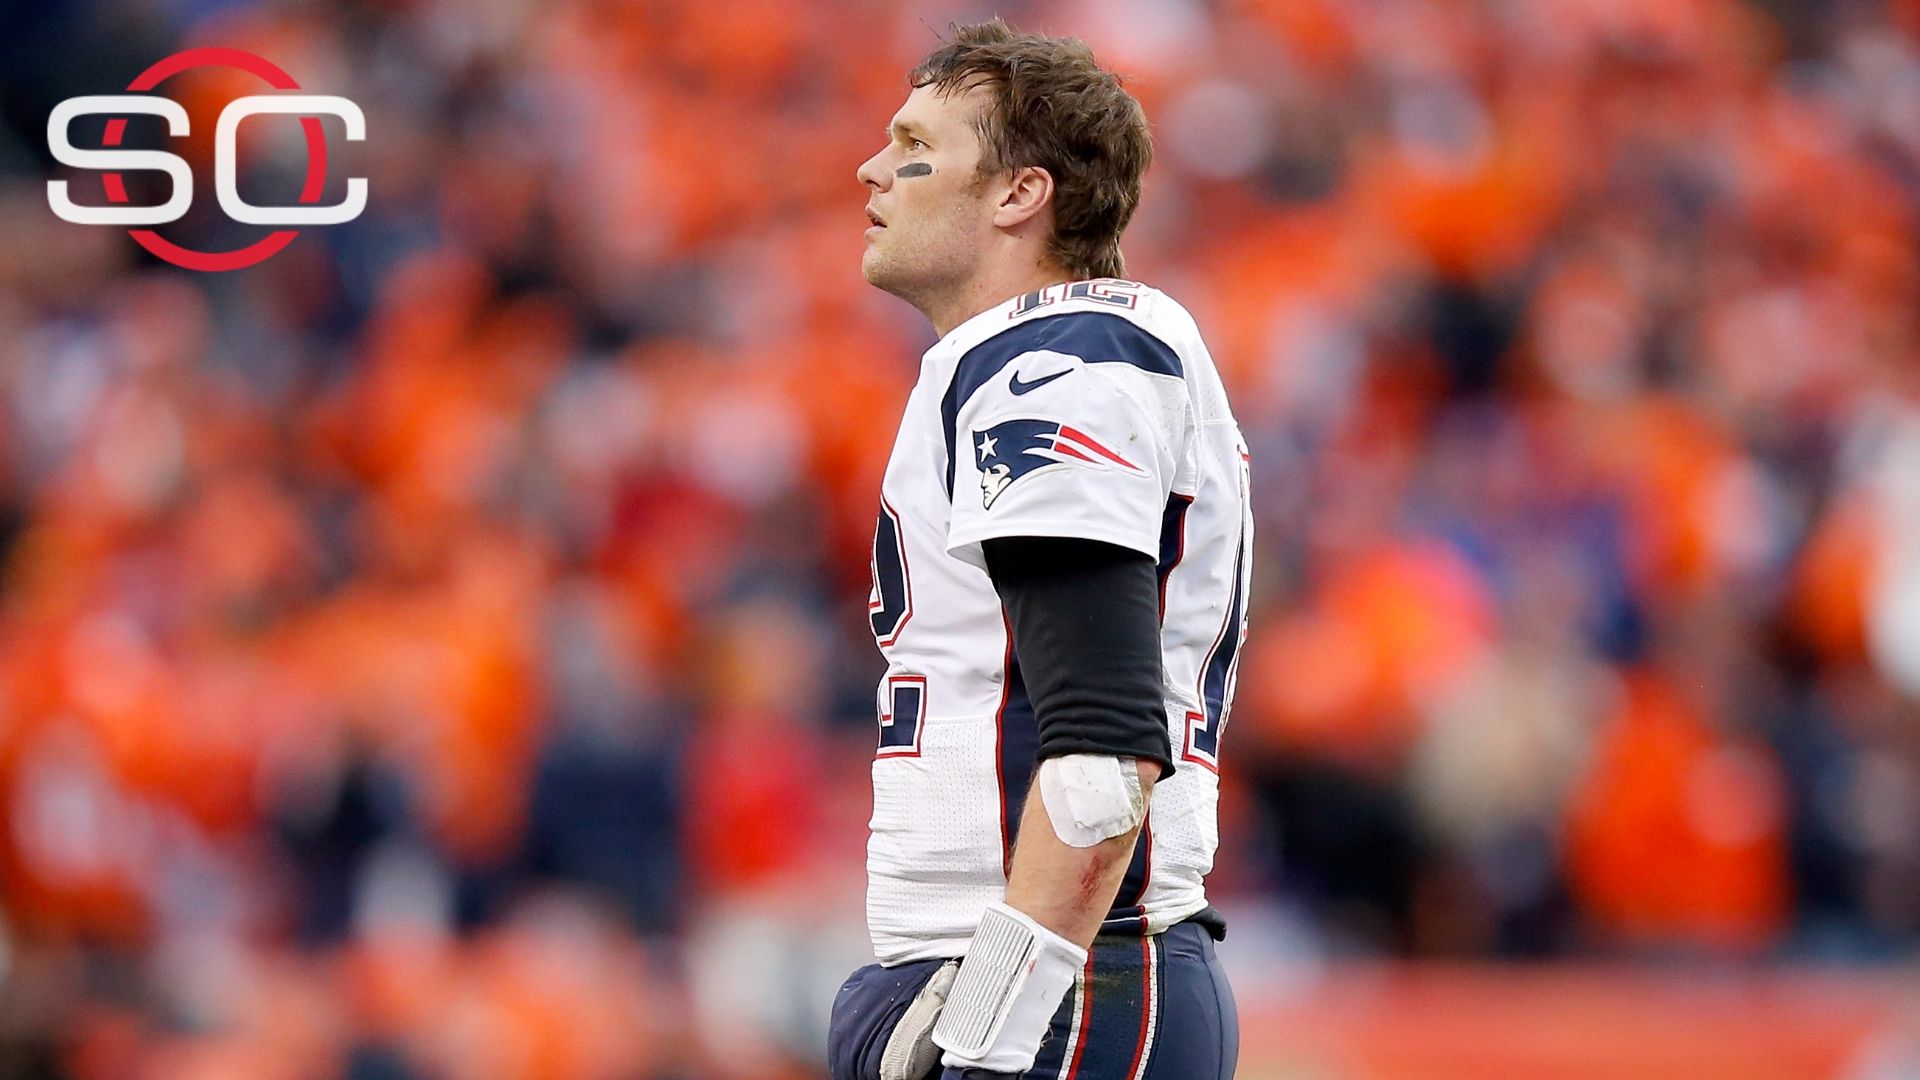 New deal links Tom Brady to Patriots through 2019 | abc7news.com1920 x 1080